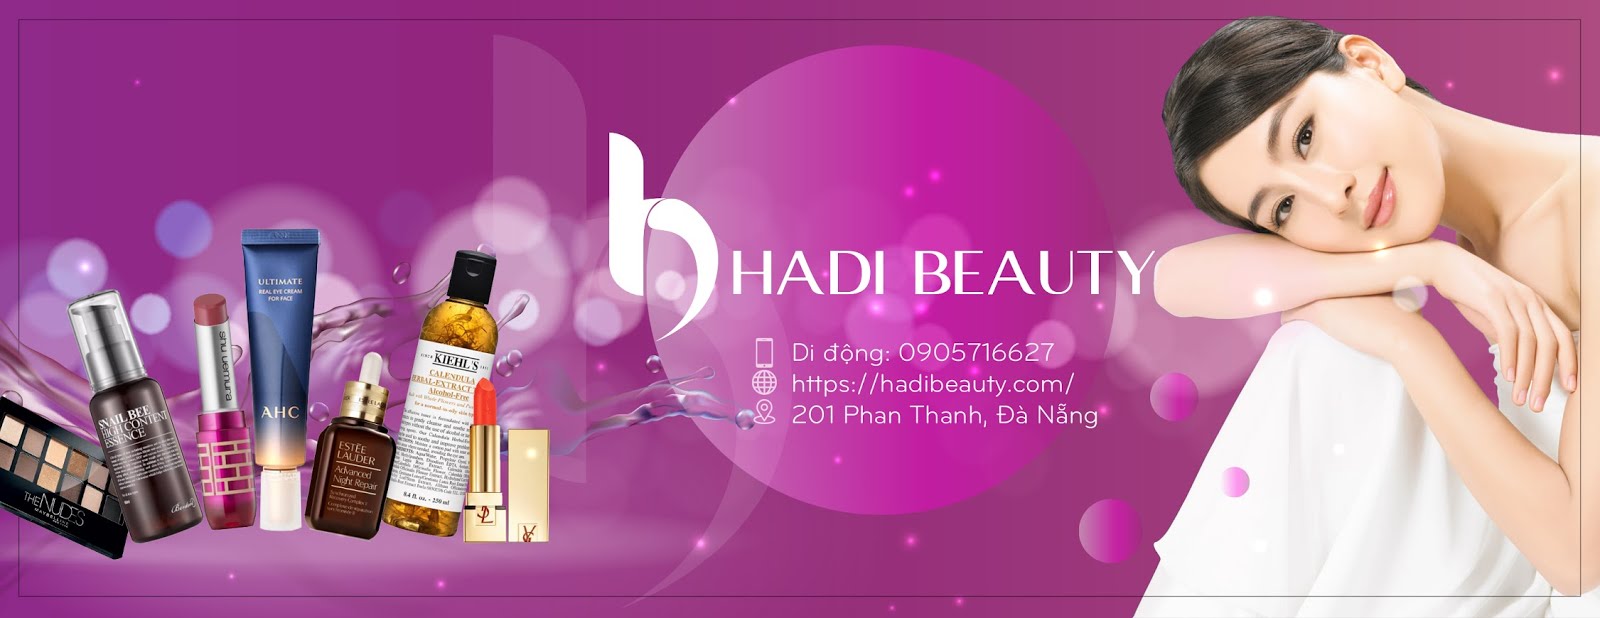 Hadi Beauty